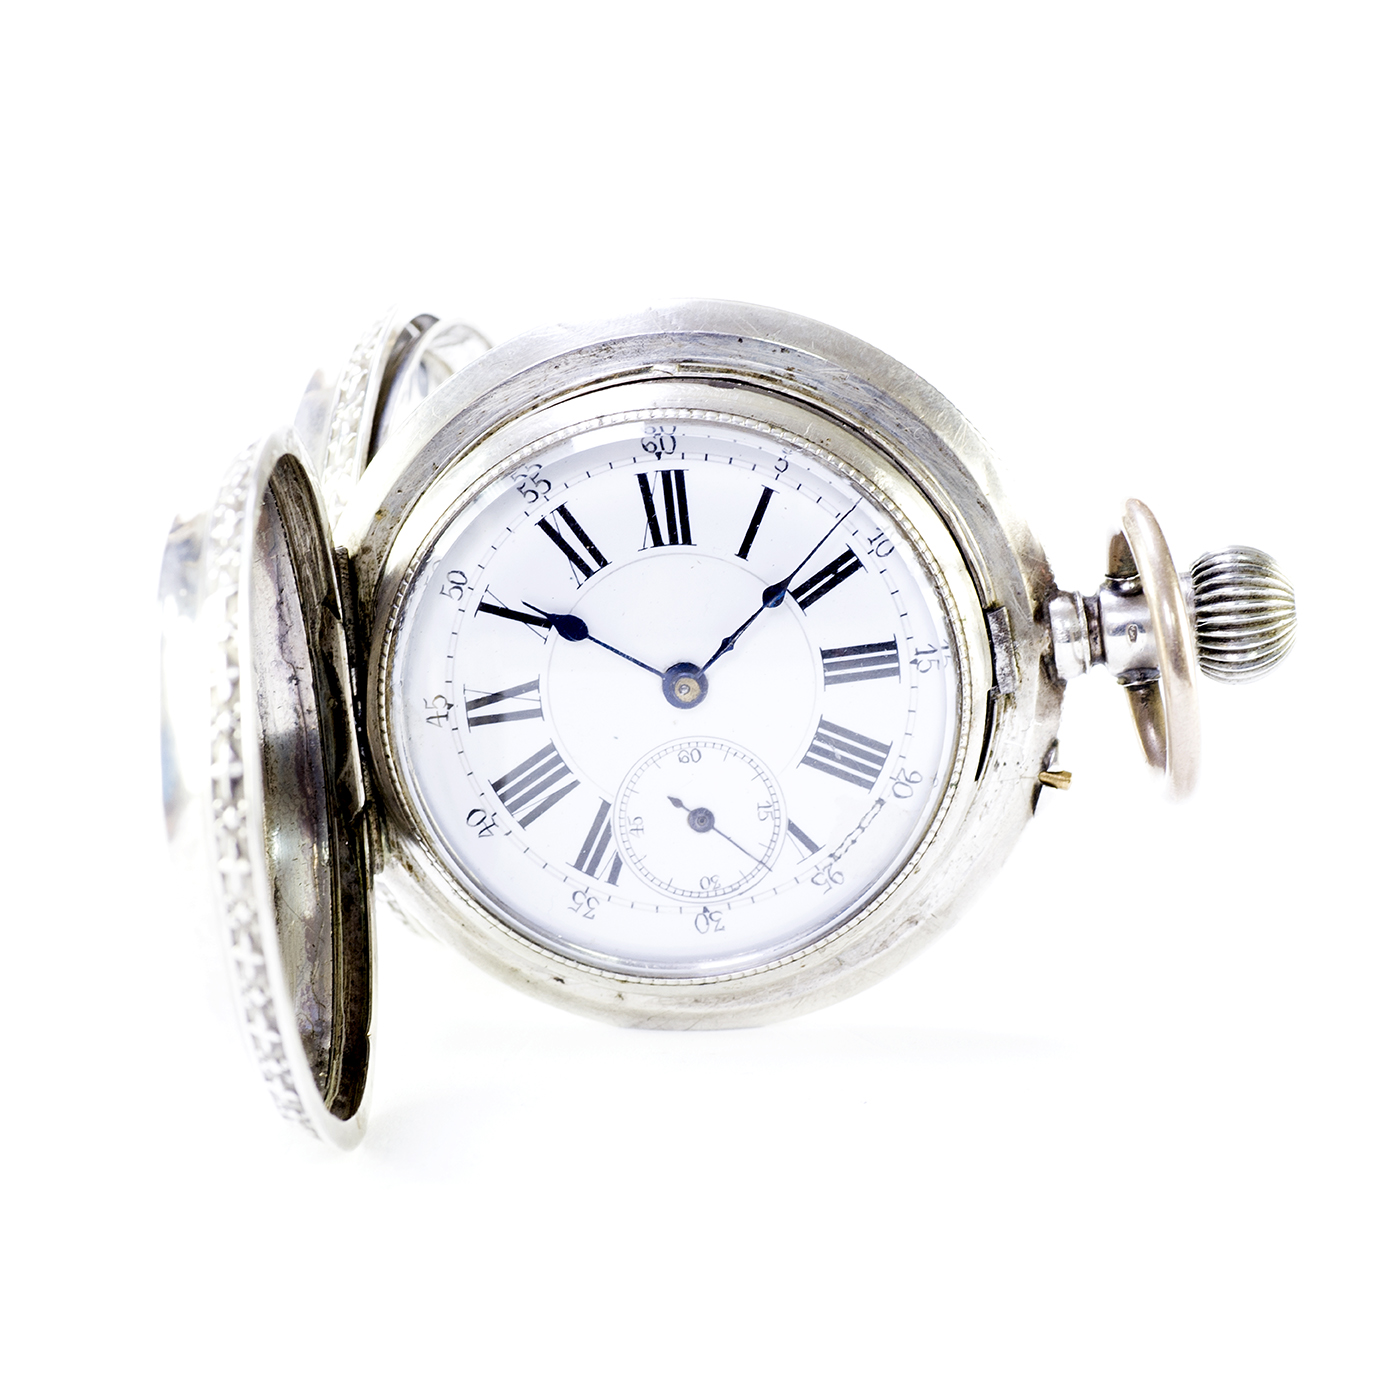 ROBERT. Reloj Suizo de bolsillo saboneta y remontoir. Suiza, ca. 1880.